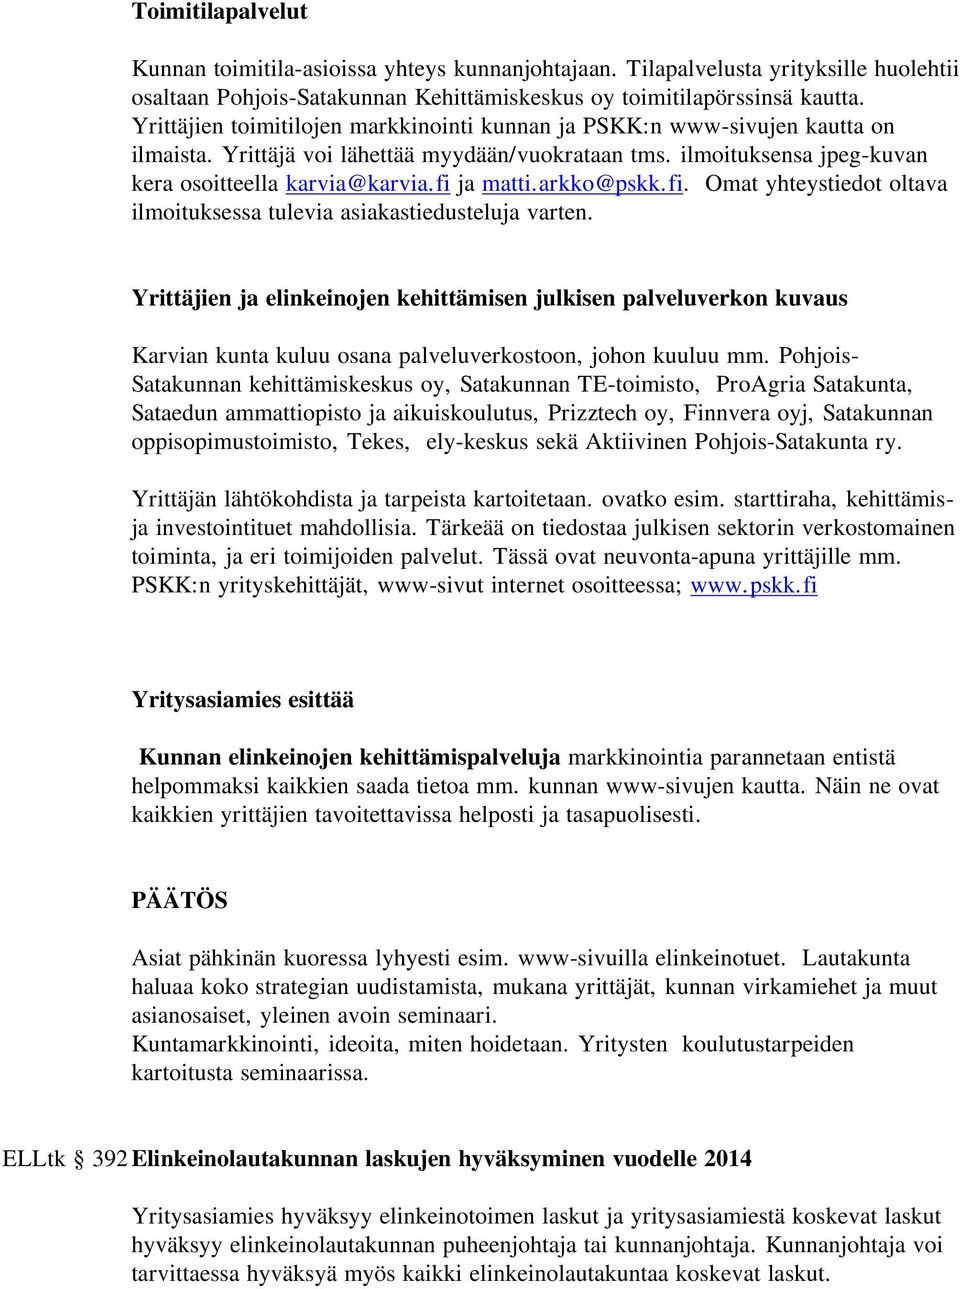 arkko@pskk.fi. Omat yhteystiedot oltava ilmoituksessa tulevia asiakastiedusteluja varten.